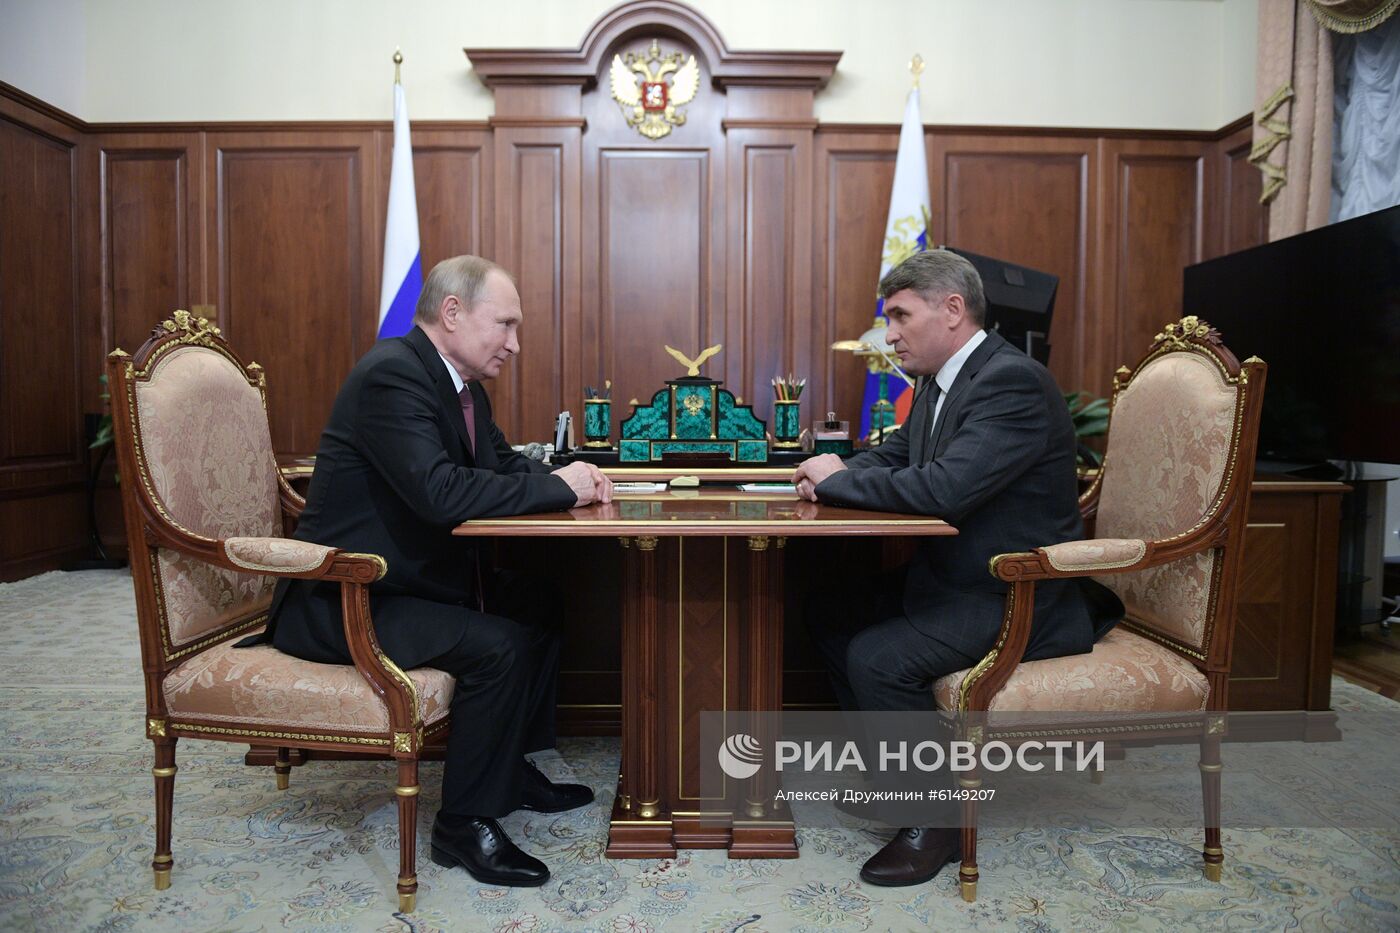  Президент РФ Путин встретился с врио главы Чувашской Республики О. Николаевым 